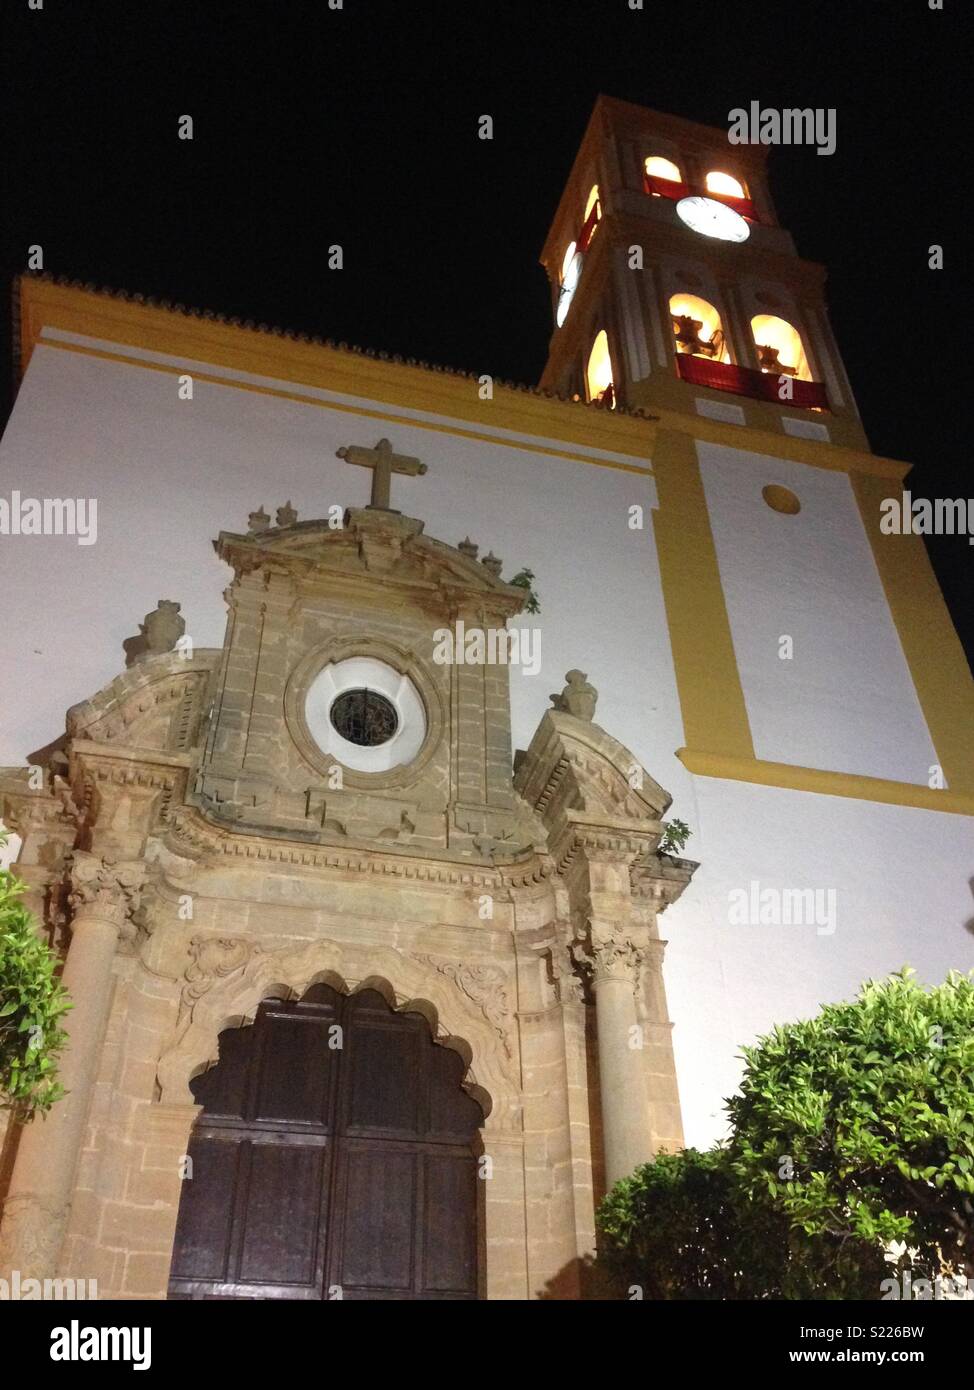 Église de Encarnation. Comité permanent sur la place de l'Église dans la vieille ville de Marbella, Espagne Banque D'Images